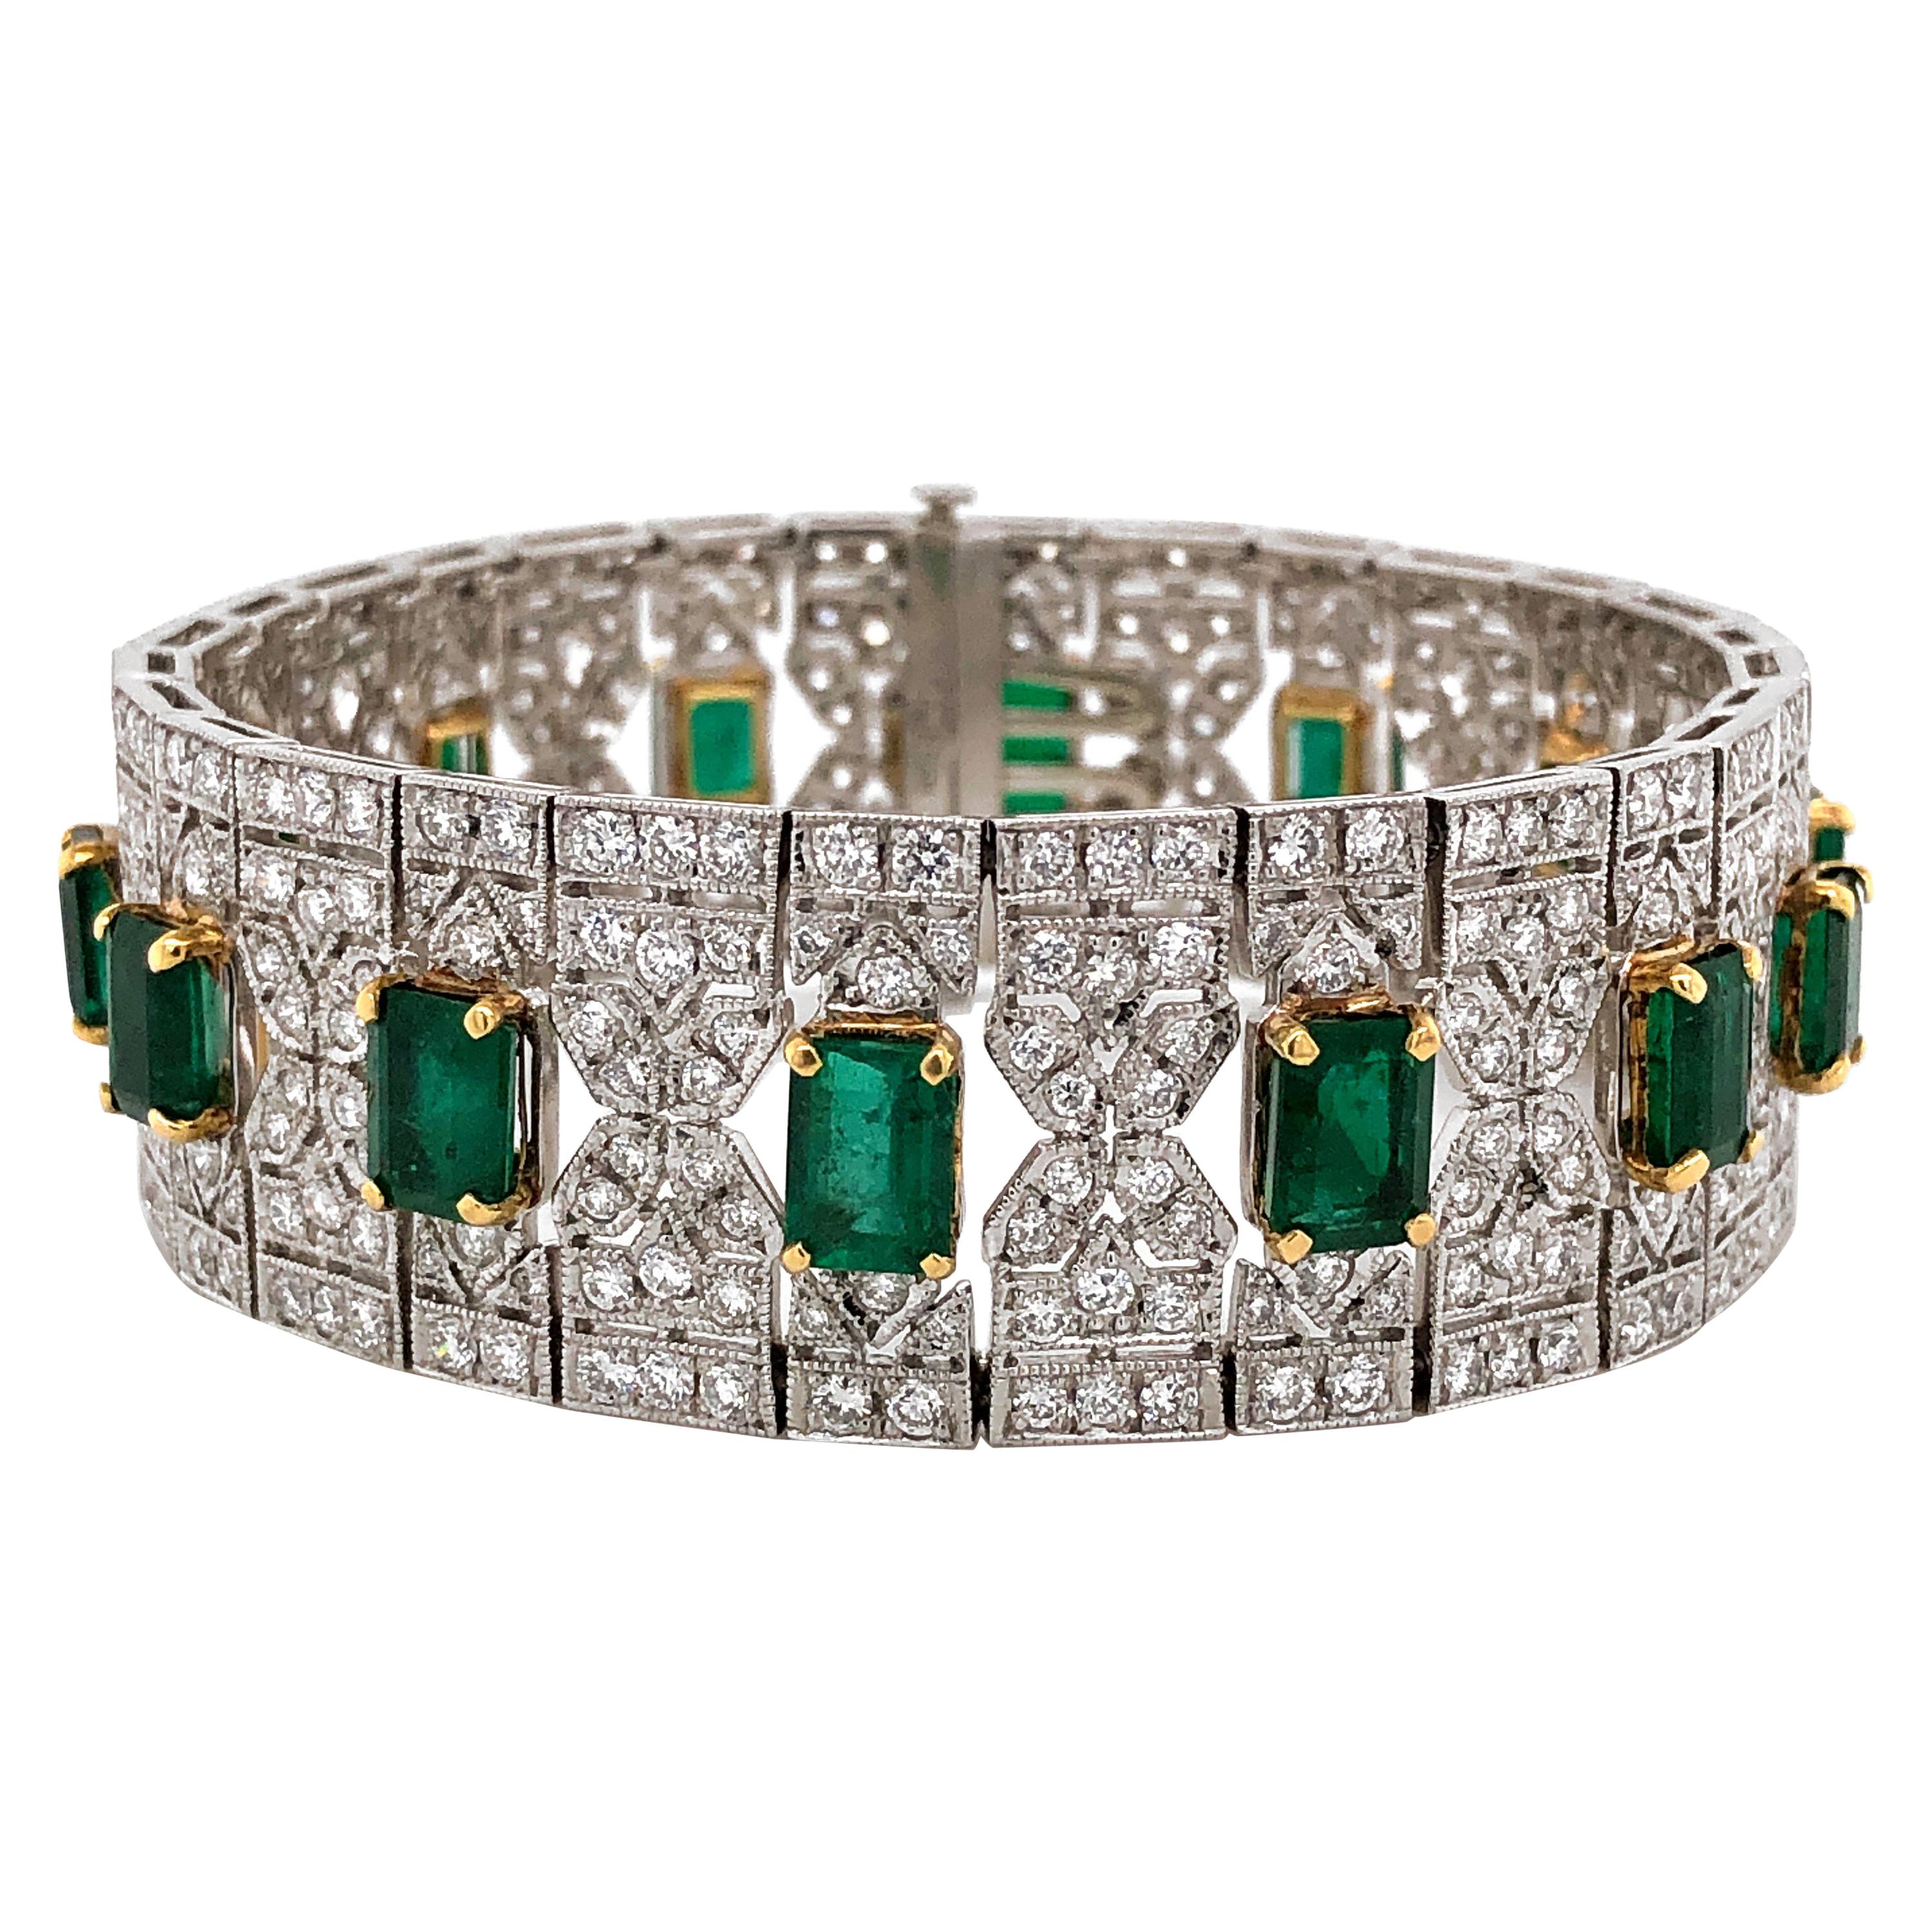 Zambian Emerald Cut Emeralds 13.14 Carat 8.26 Carat Diamond Platinum Bracelet For Sale